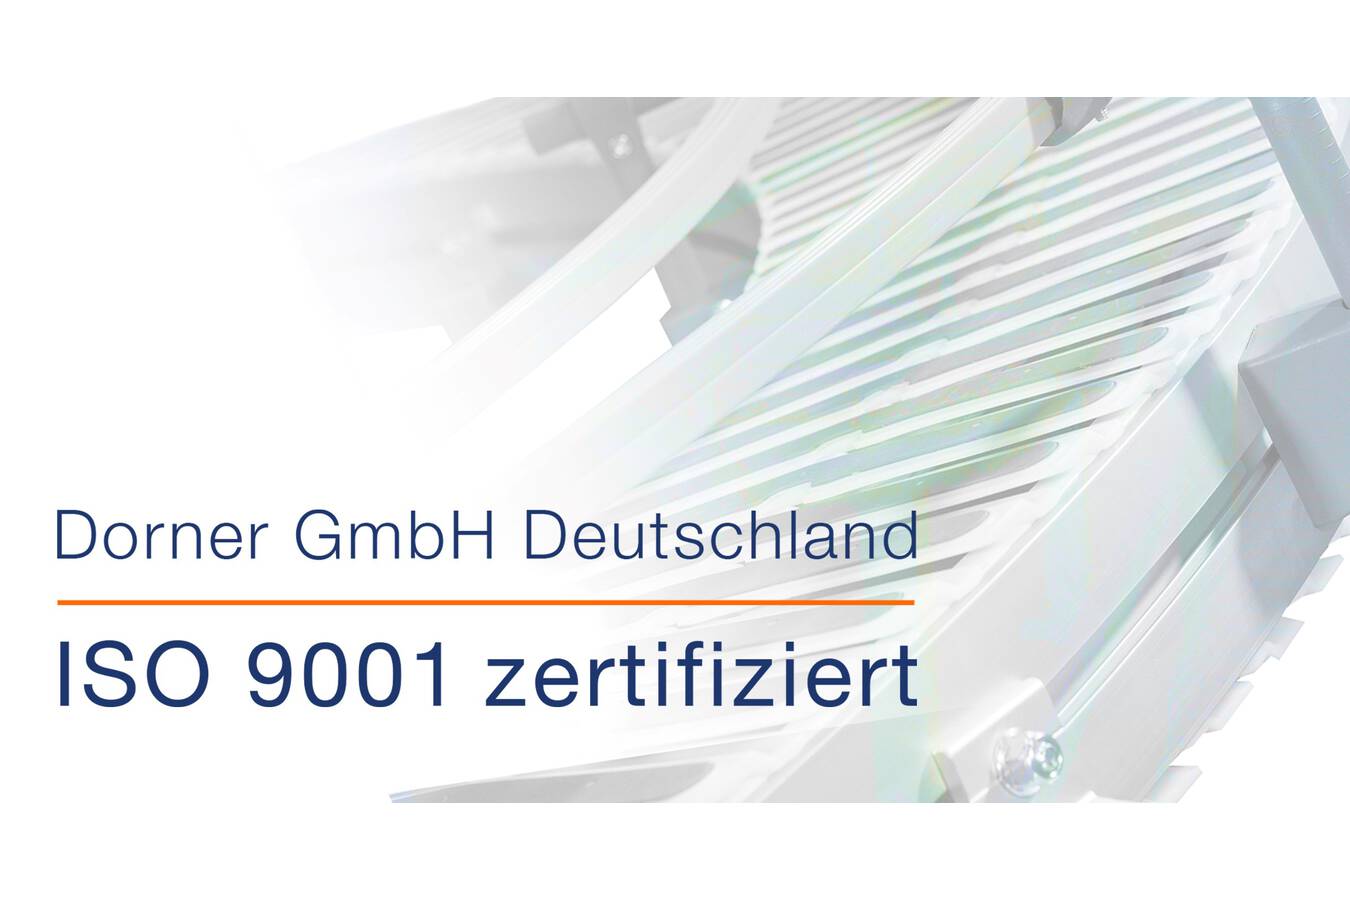 Qualitätsmanagement von Dorner wurde bestätigt mit ISO 9001-Re-Zertifizierungsaudit